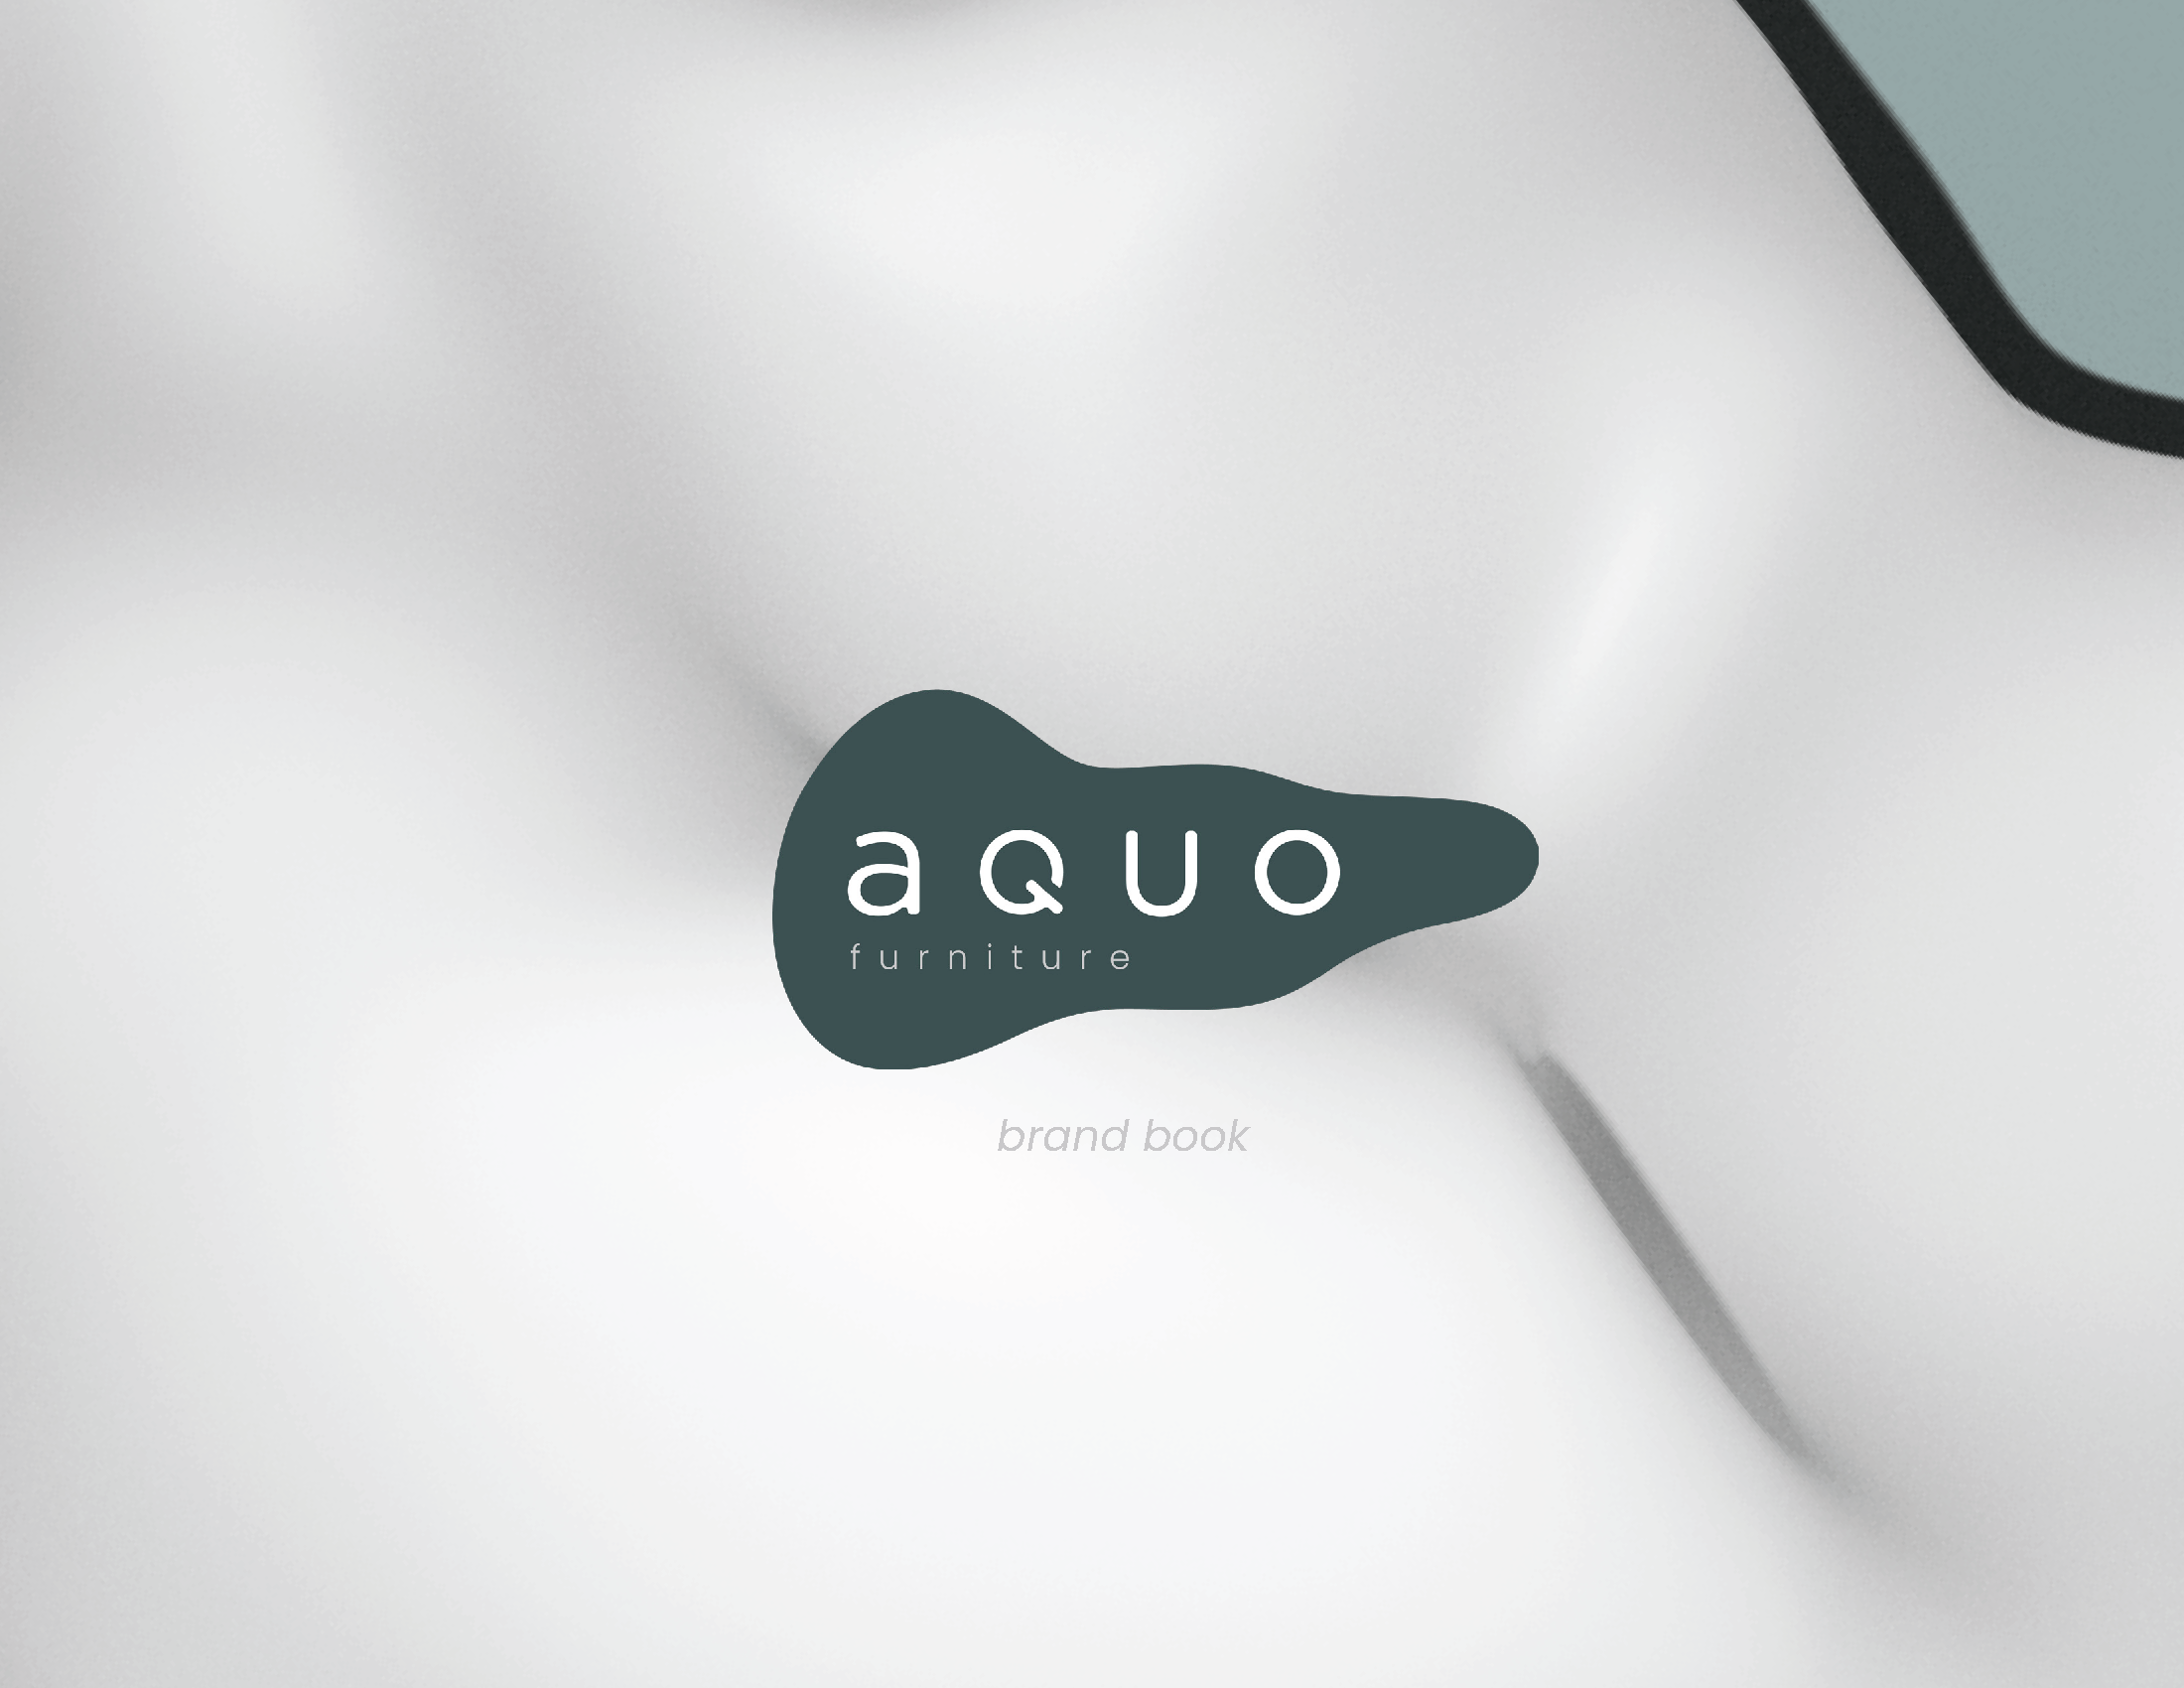 Aquo